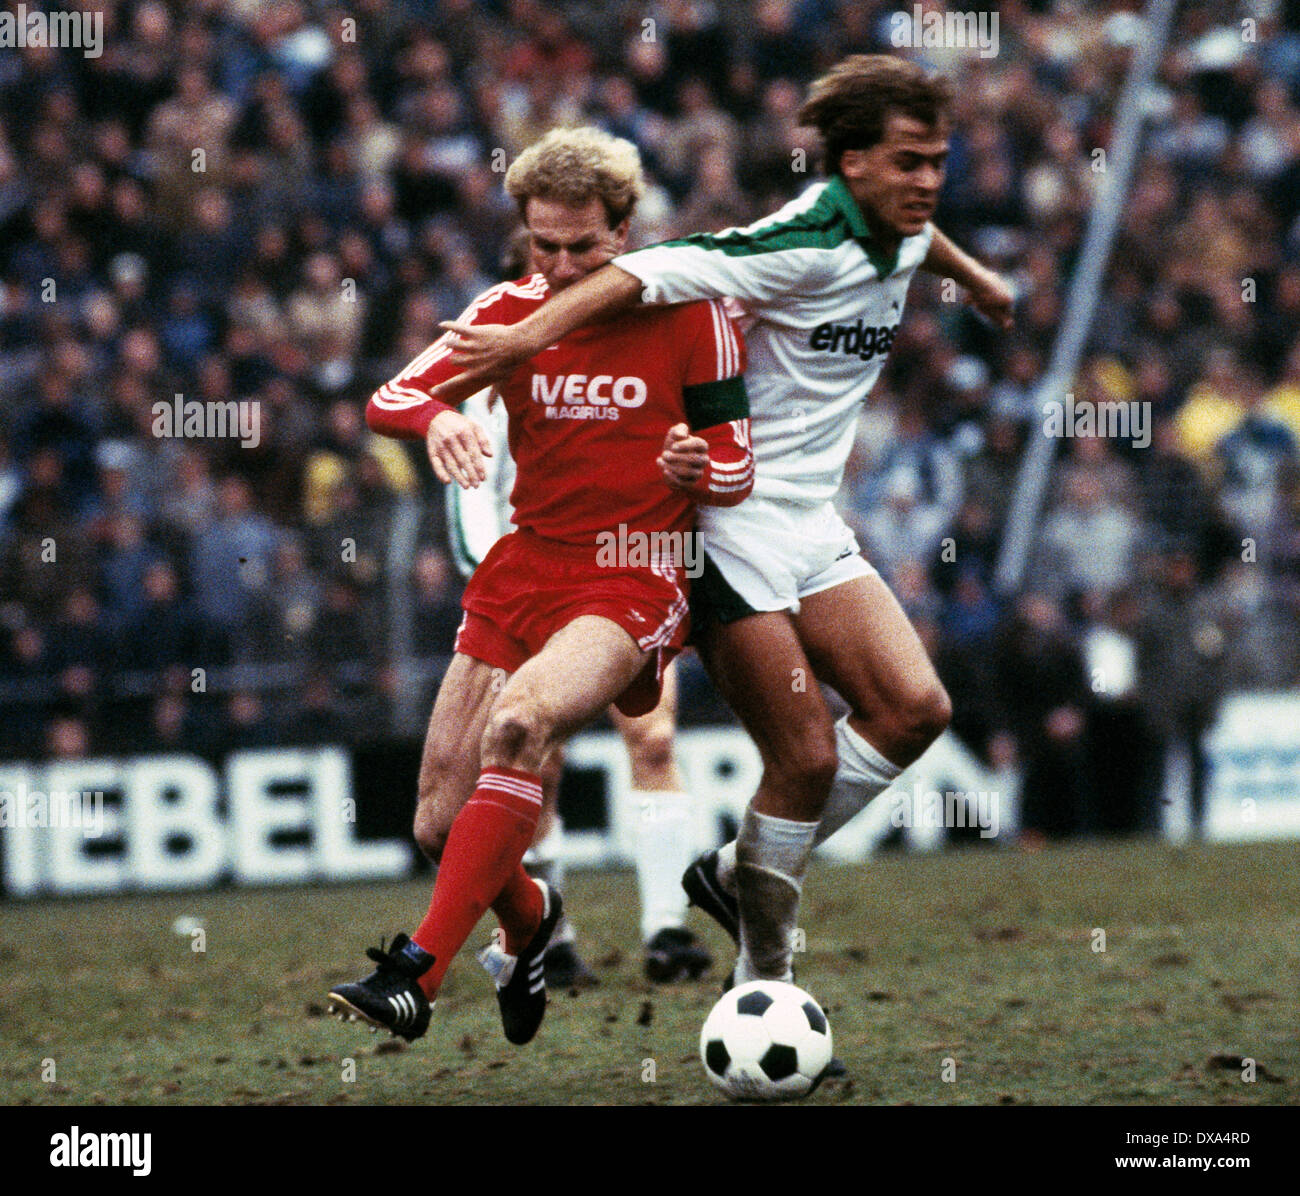 Football, Bundesliga, 1983/1984, le stade am Boekelberg, Borussia Moenchengladbach contre FC Bayern Munich 3:0, scène du match, duel, jeu déloyal de Michael Frontzeck (MG) à droite au chef d'équipe Karl-Heinz Rummenigge (FCB) Banque D'Images